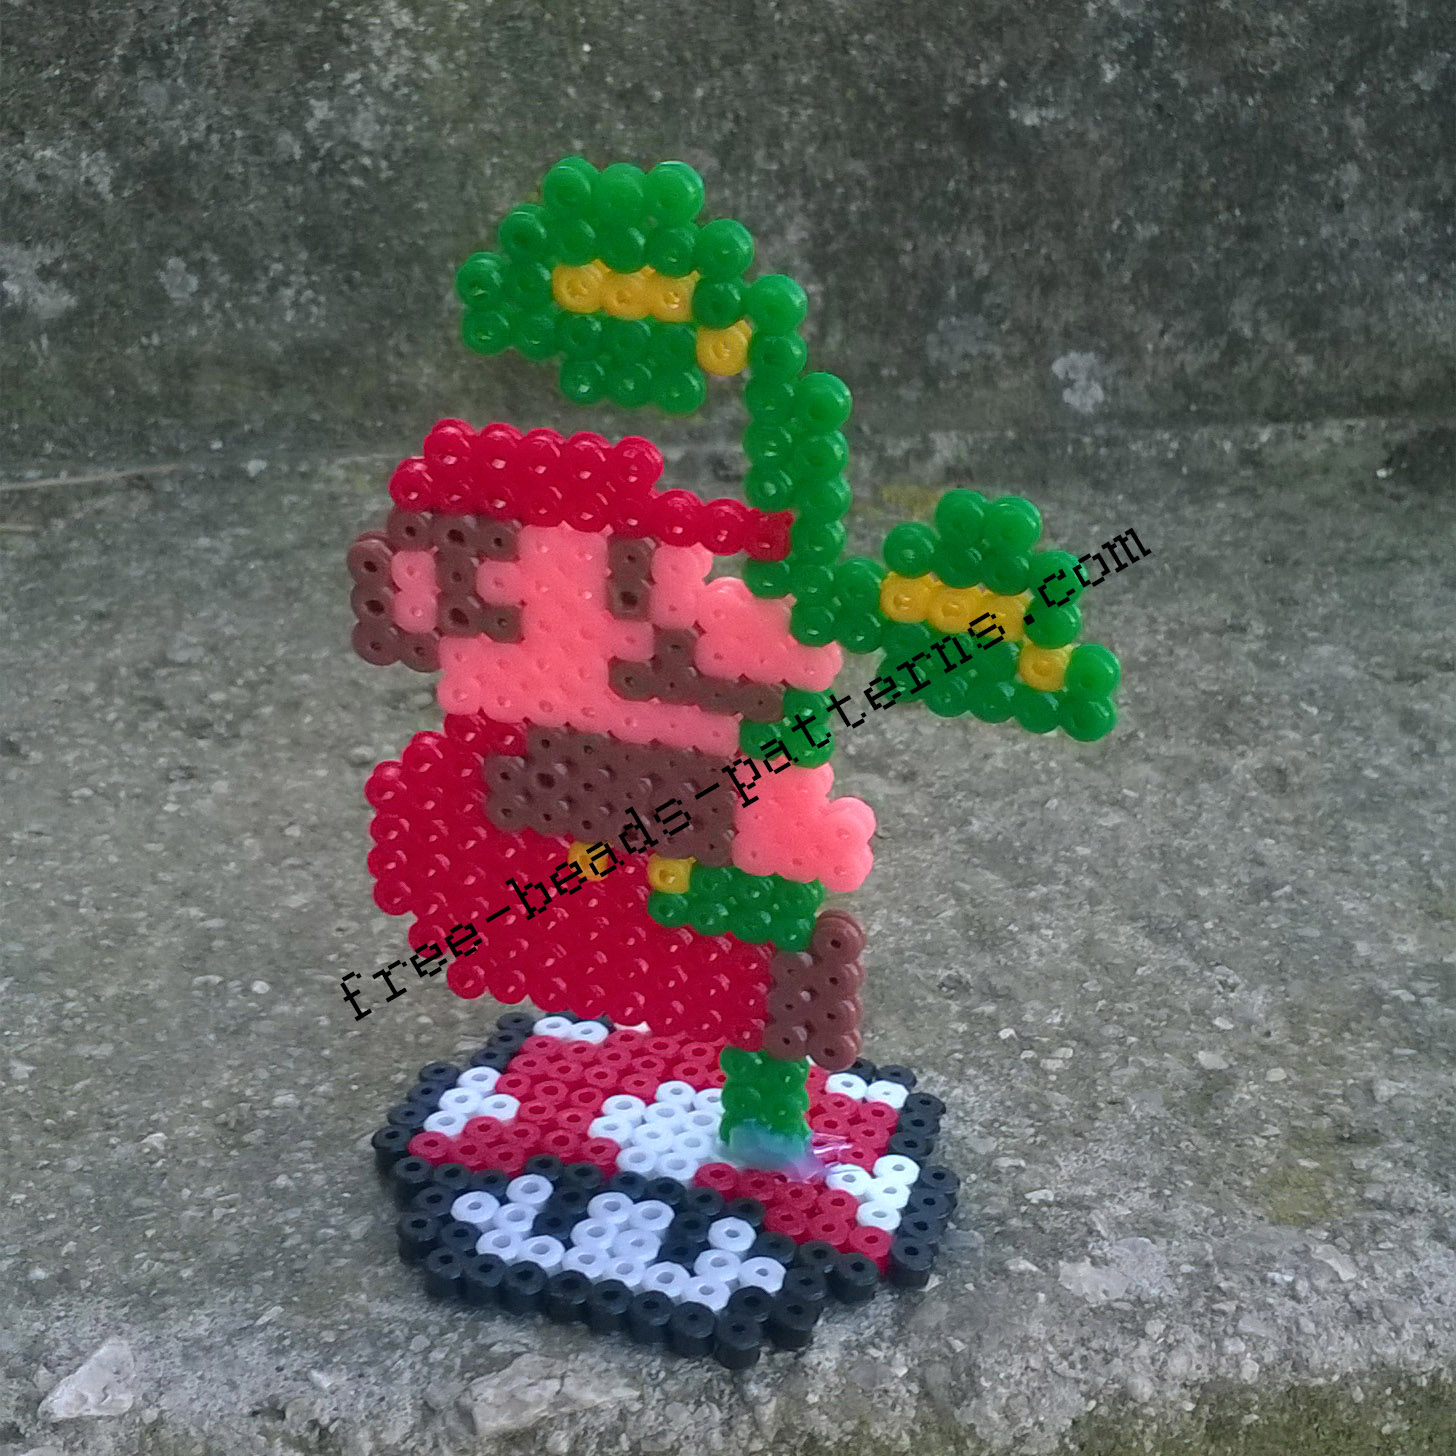 Super Mario Bros climbing the plant 2D perler beads on pedestal photos (4)